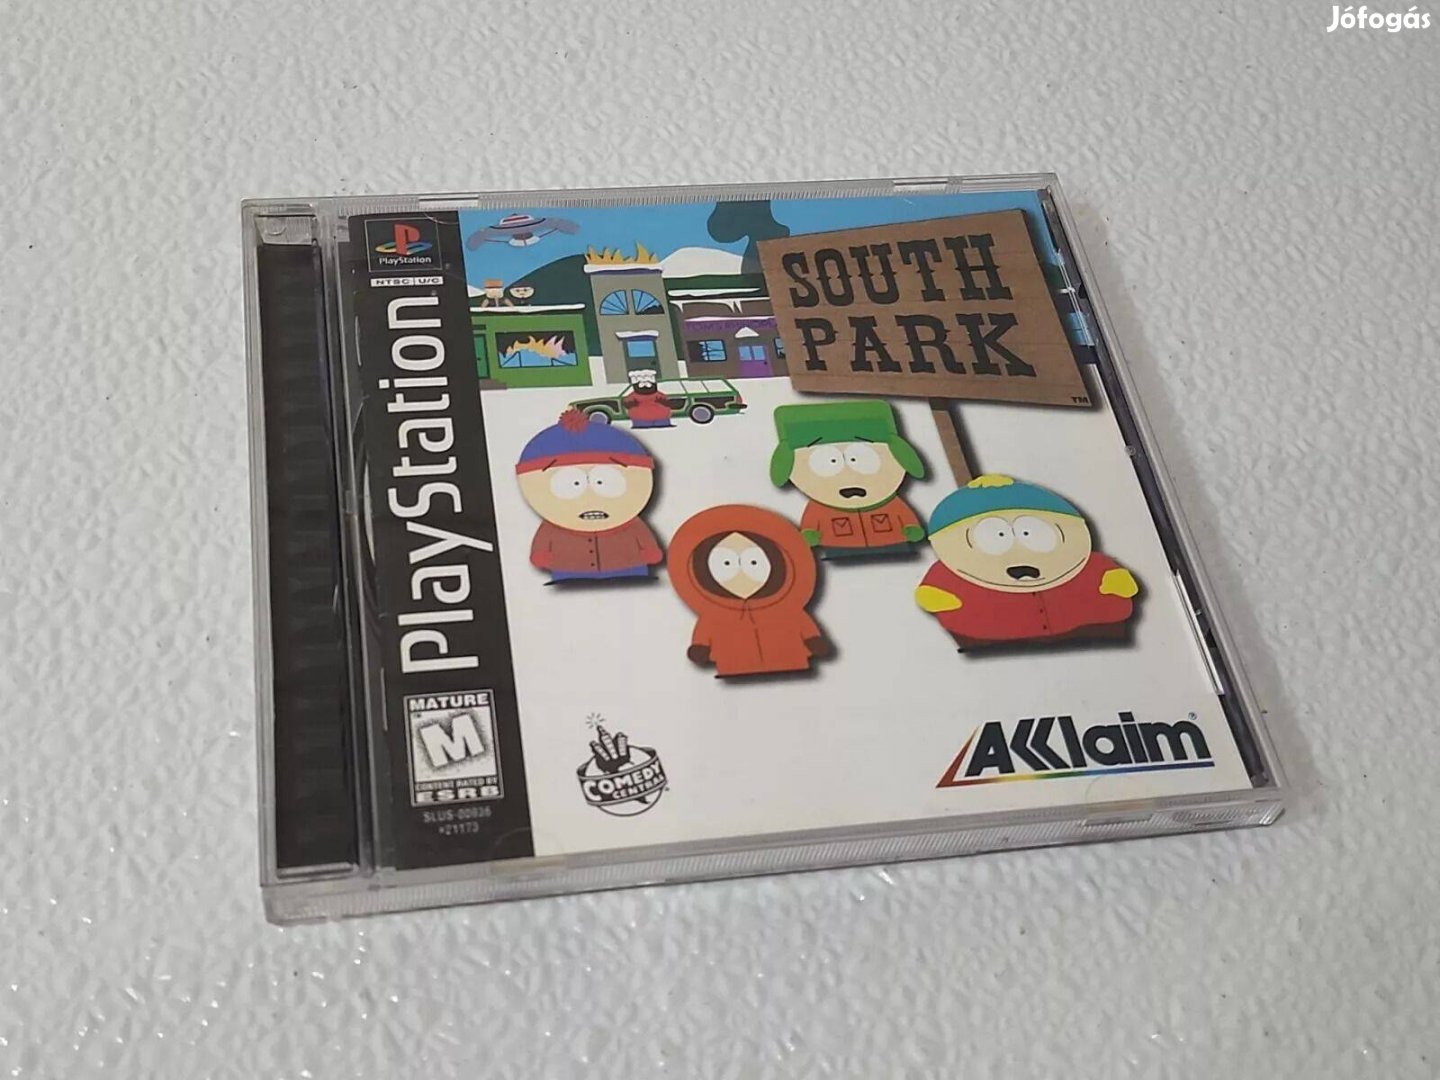 Keresek: Keresem! South Park Playstation 1 játék